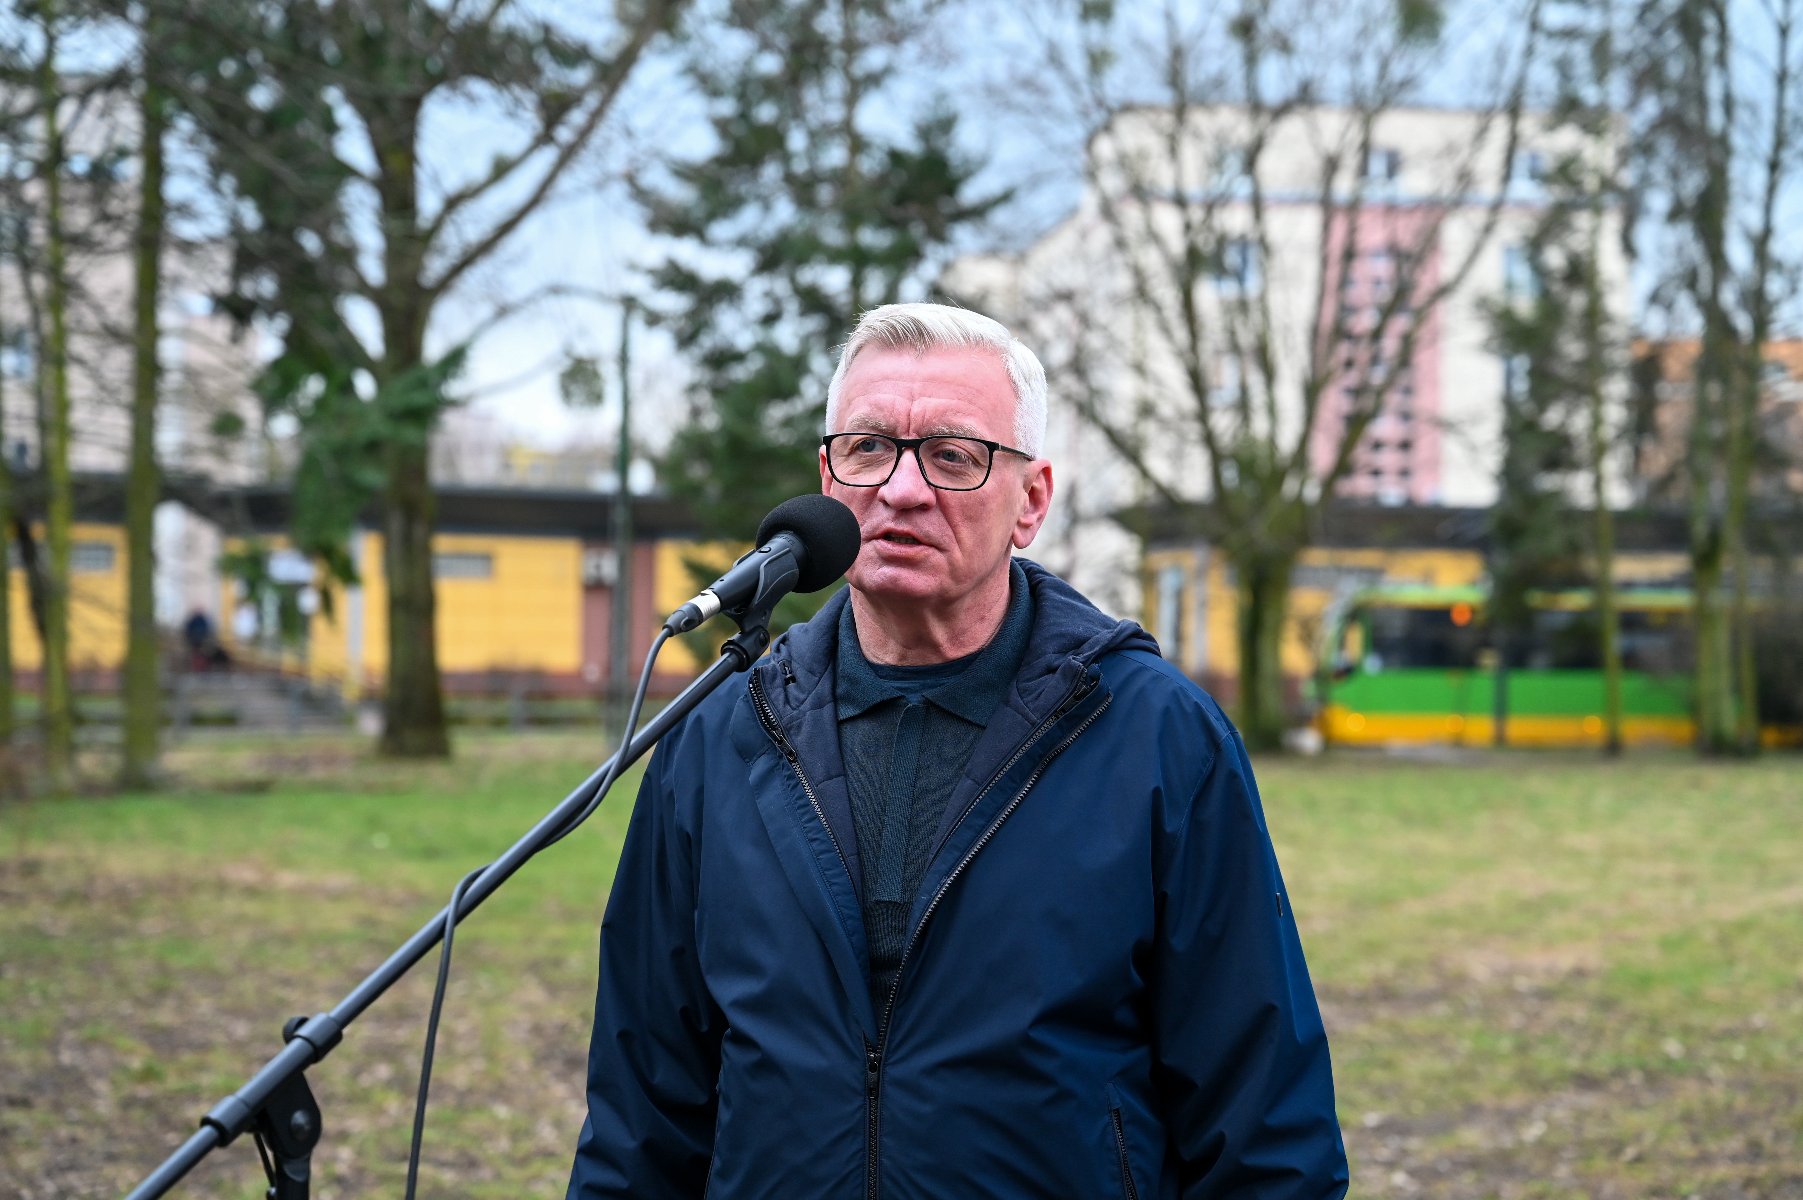 Na zdjeciu prezydent Poznania przy mikrofonie, na pętli Ogrody - grafika artykułu